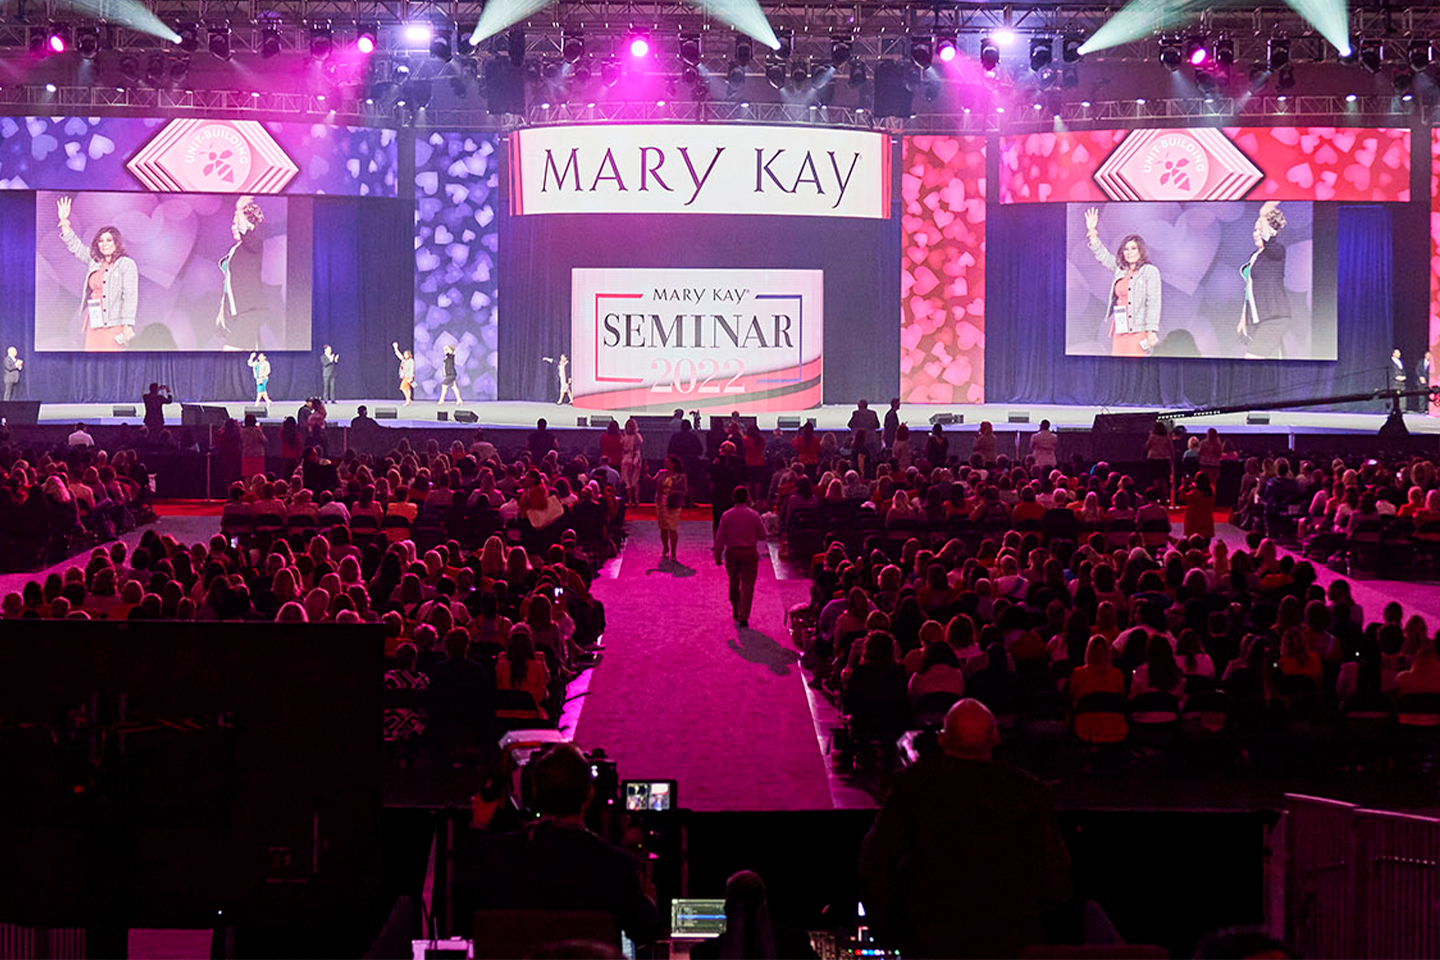 Conferentie van Mary Kay met mensen die over een podium lopen